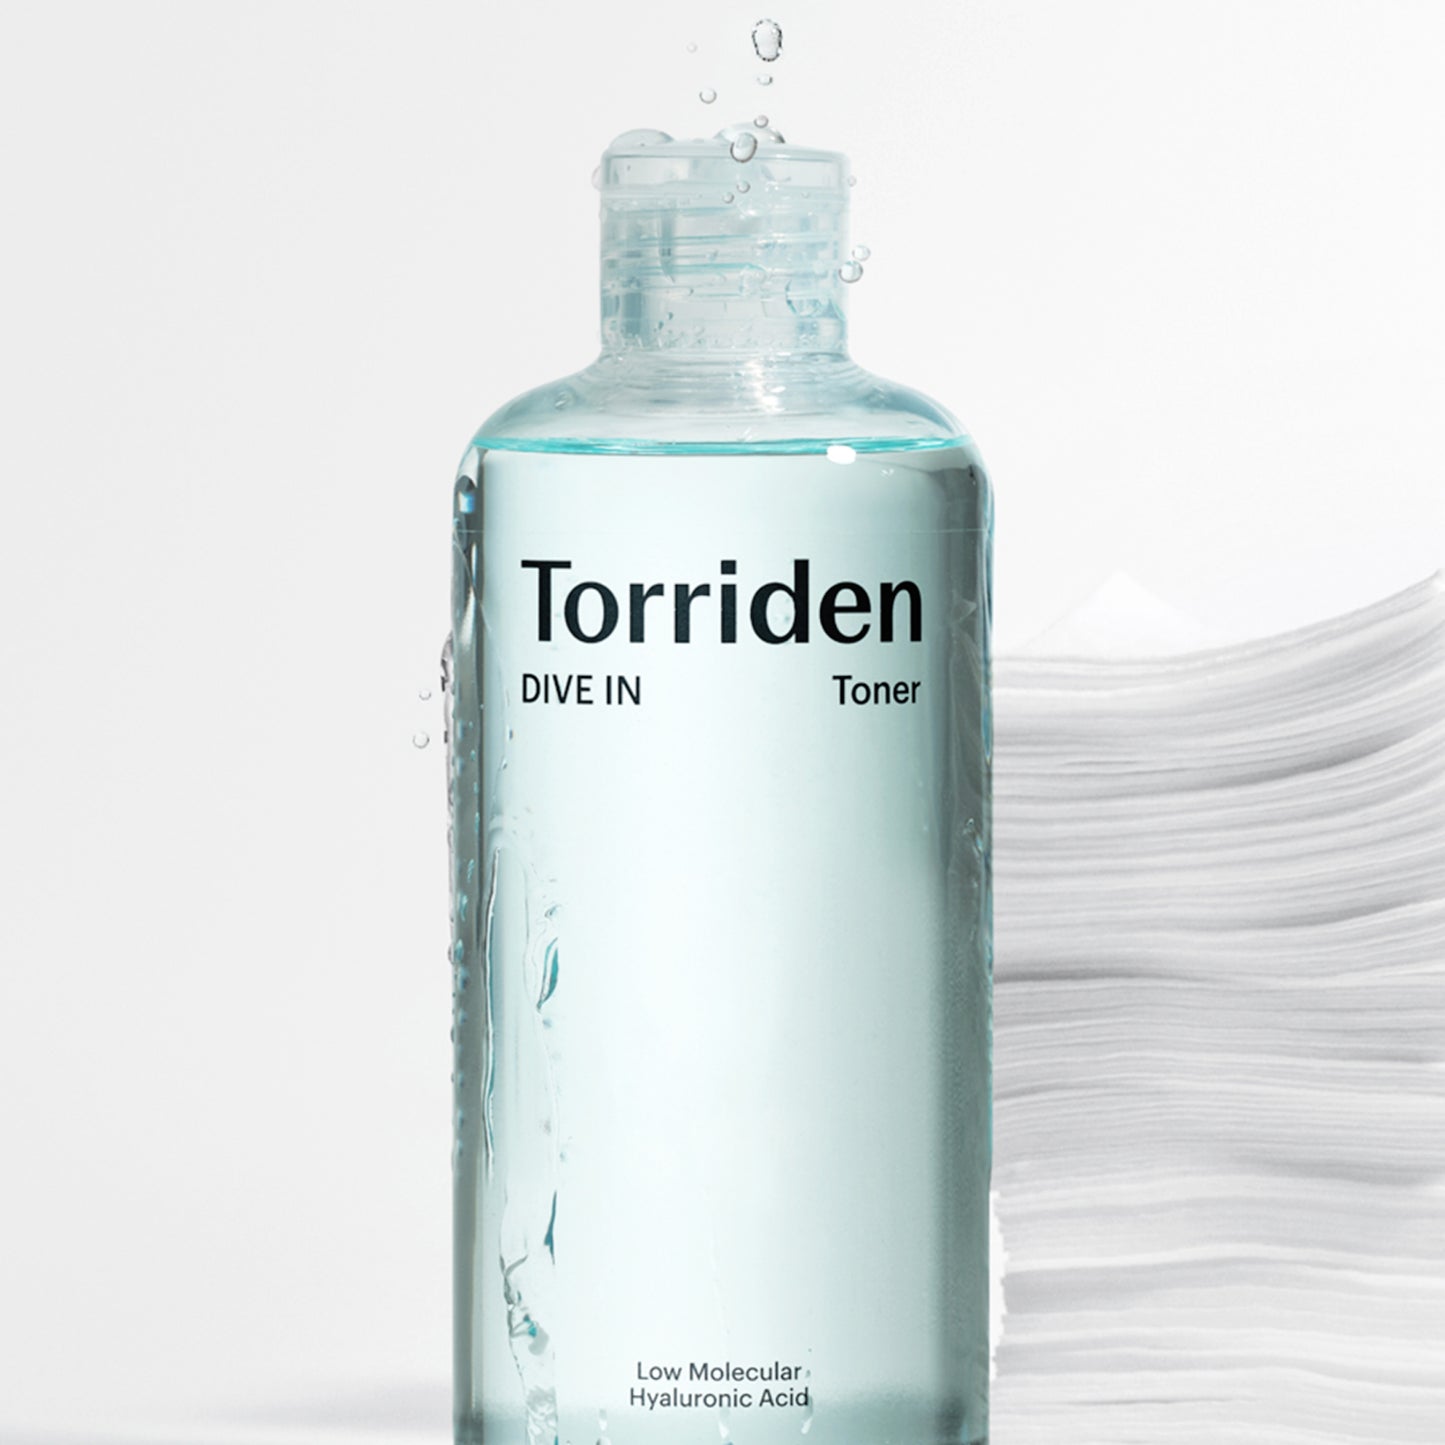 TORRIDEN DIVE-IN Low Molecular Hyaluronic Acid Toner (300ml)